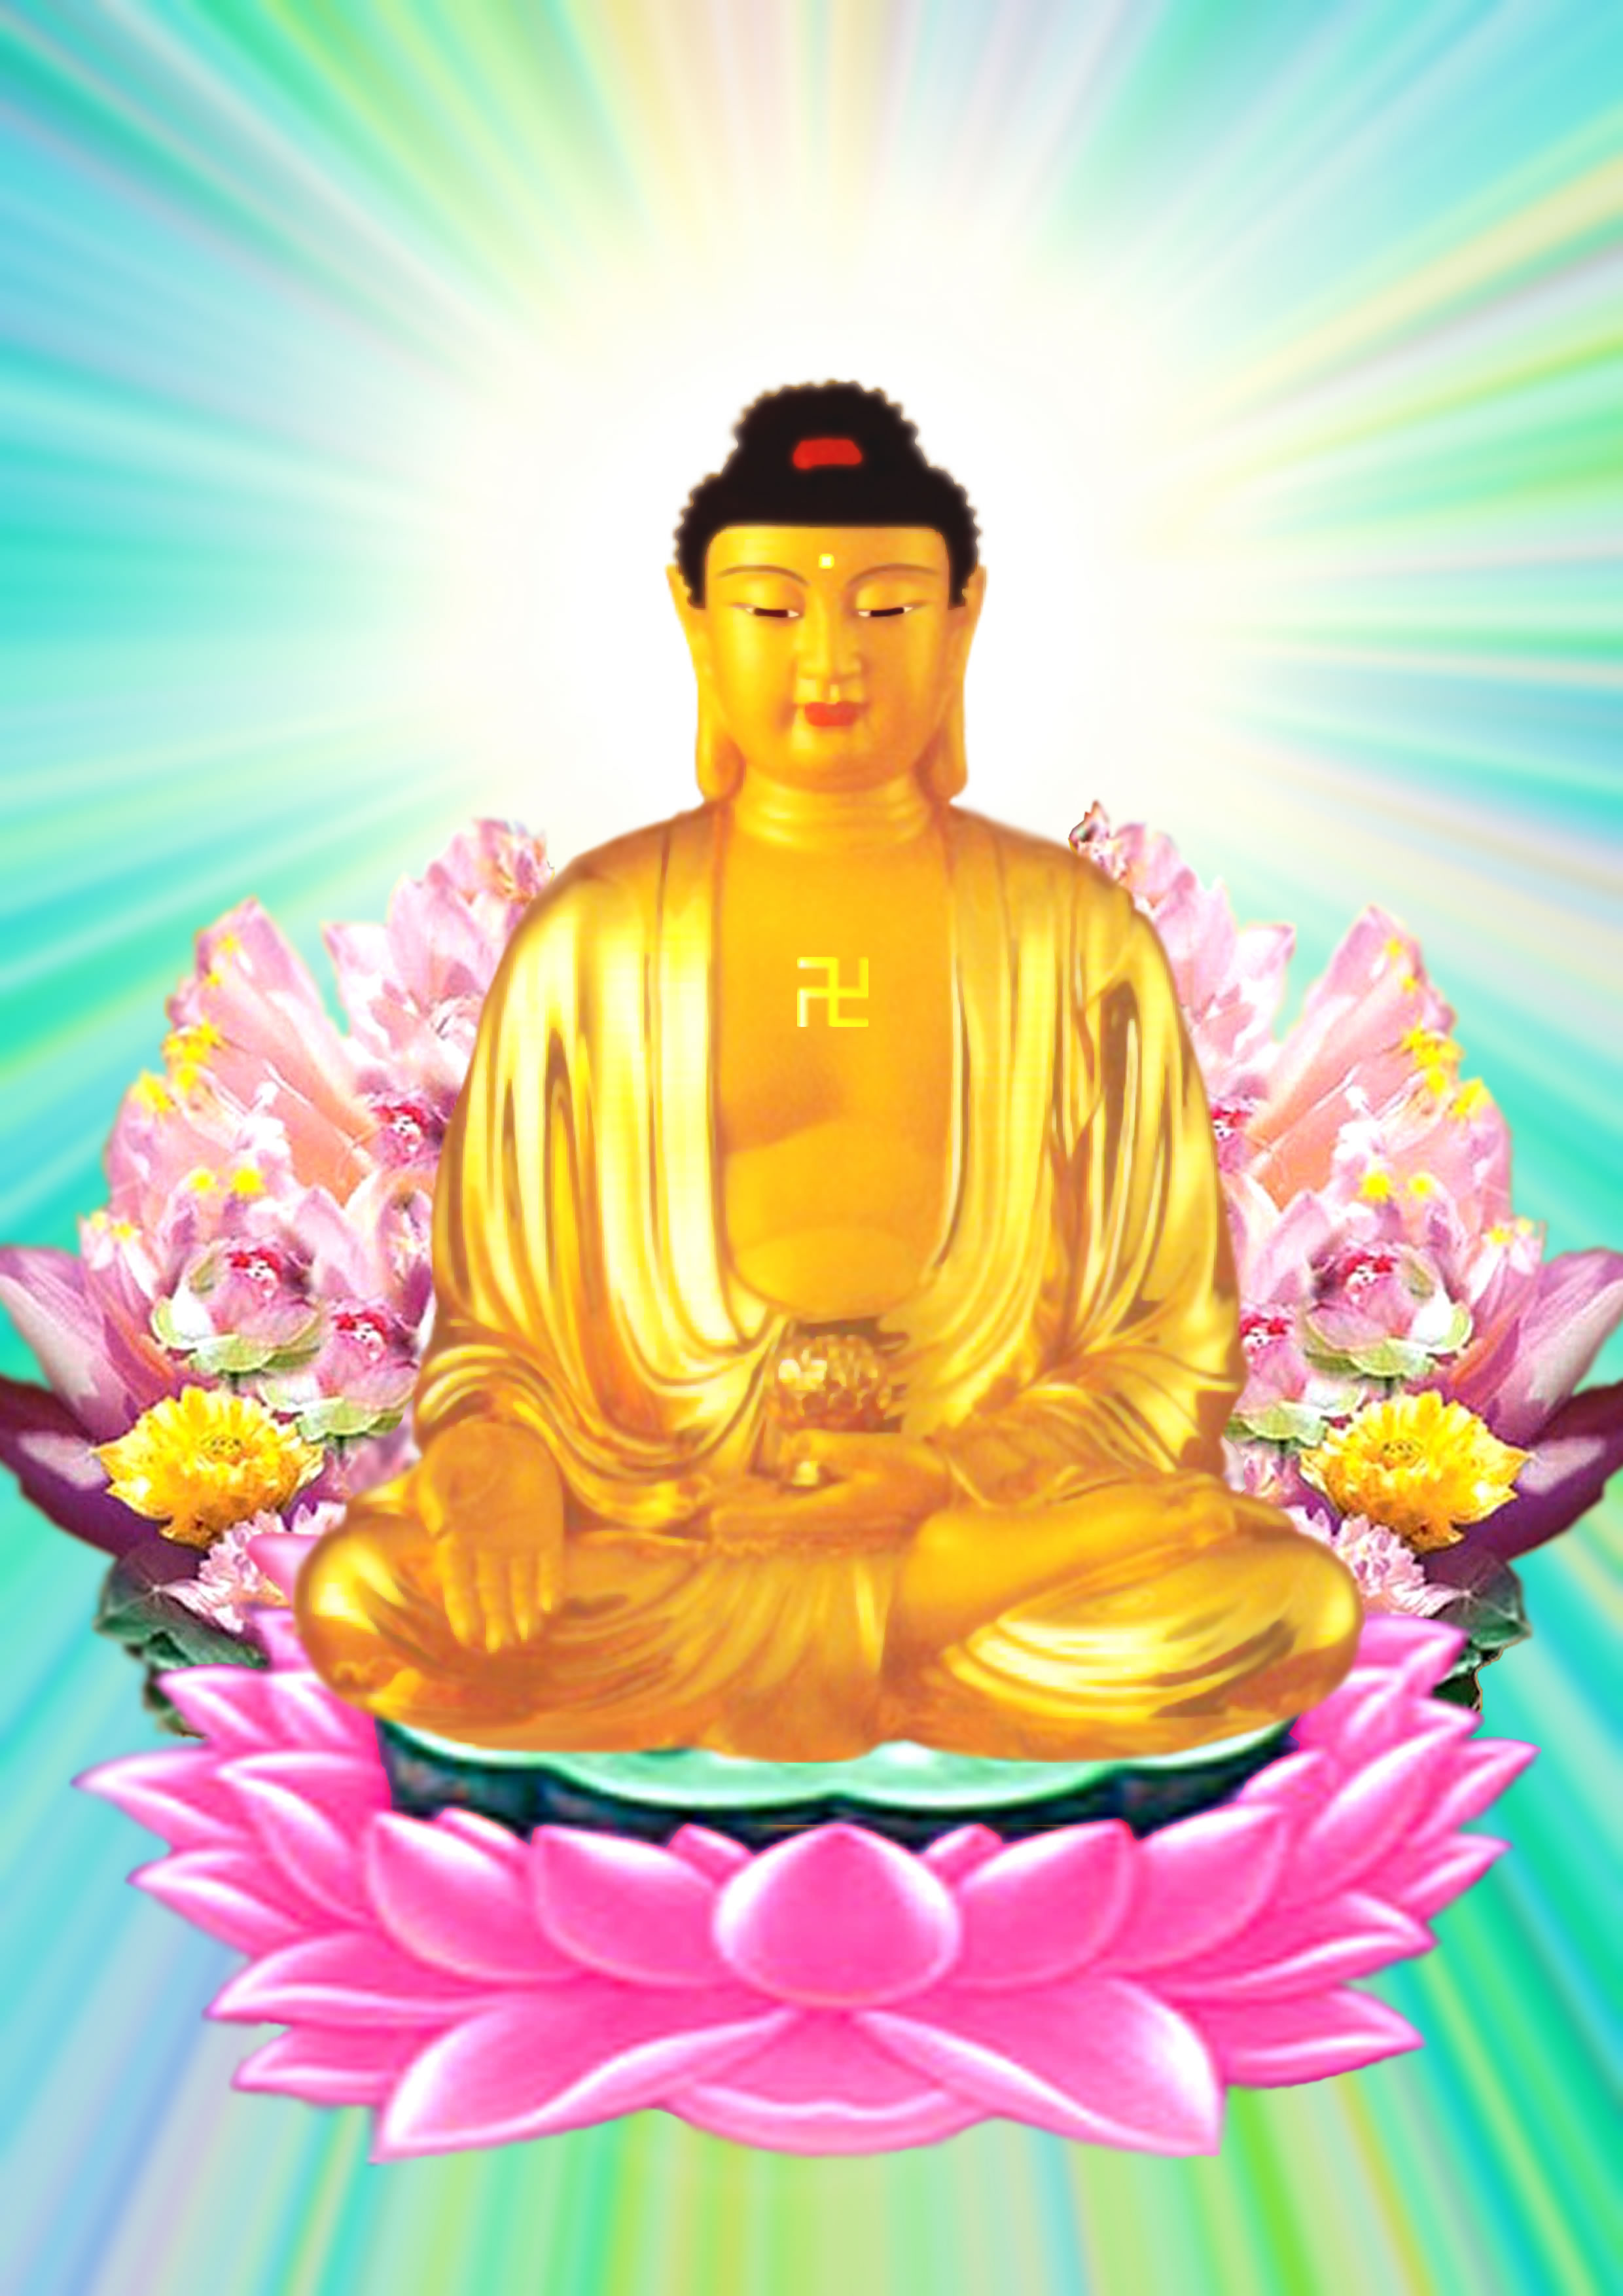 Phật Tử Vẻ: Phật Tử Vẻ là hình ảnh của sự vô tư và thanh nhã trong đạo Phật. Hãy ngắm nhìn bức tranh tuyệt đẹp này để cảm nhận sự thanh tao, dịu dàng và đầy tình yêu thương của Phật Tử Vẻ.